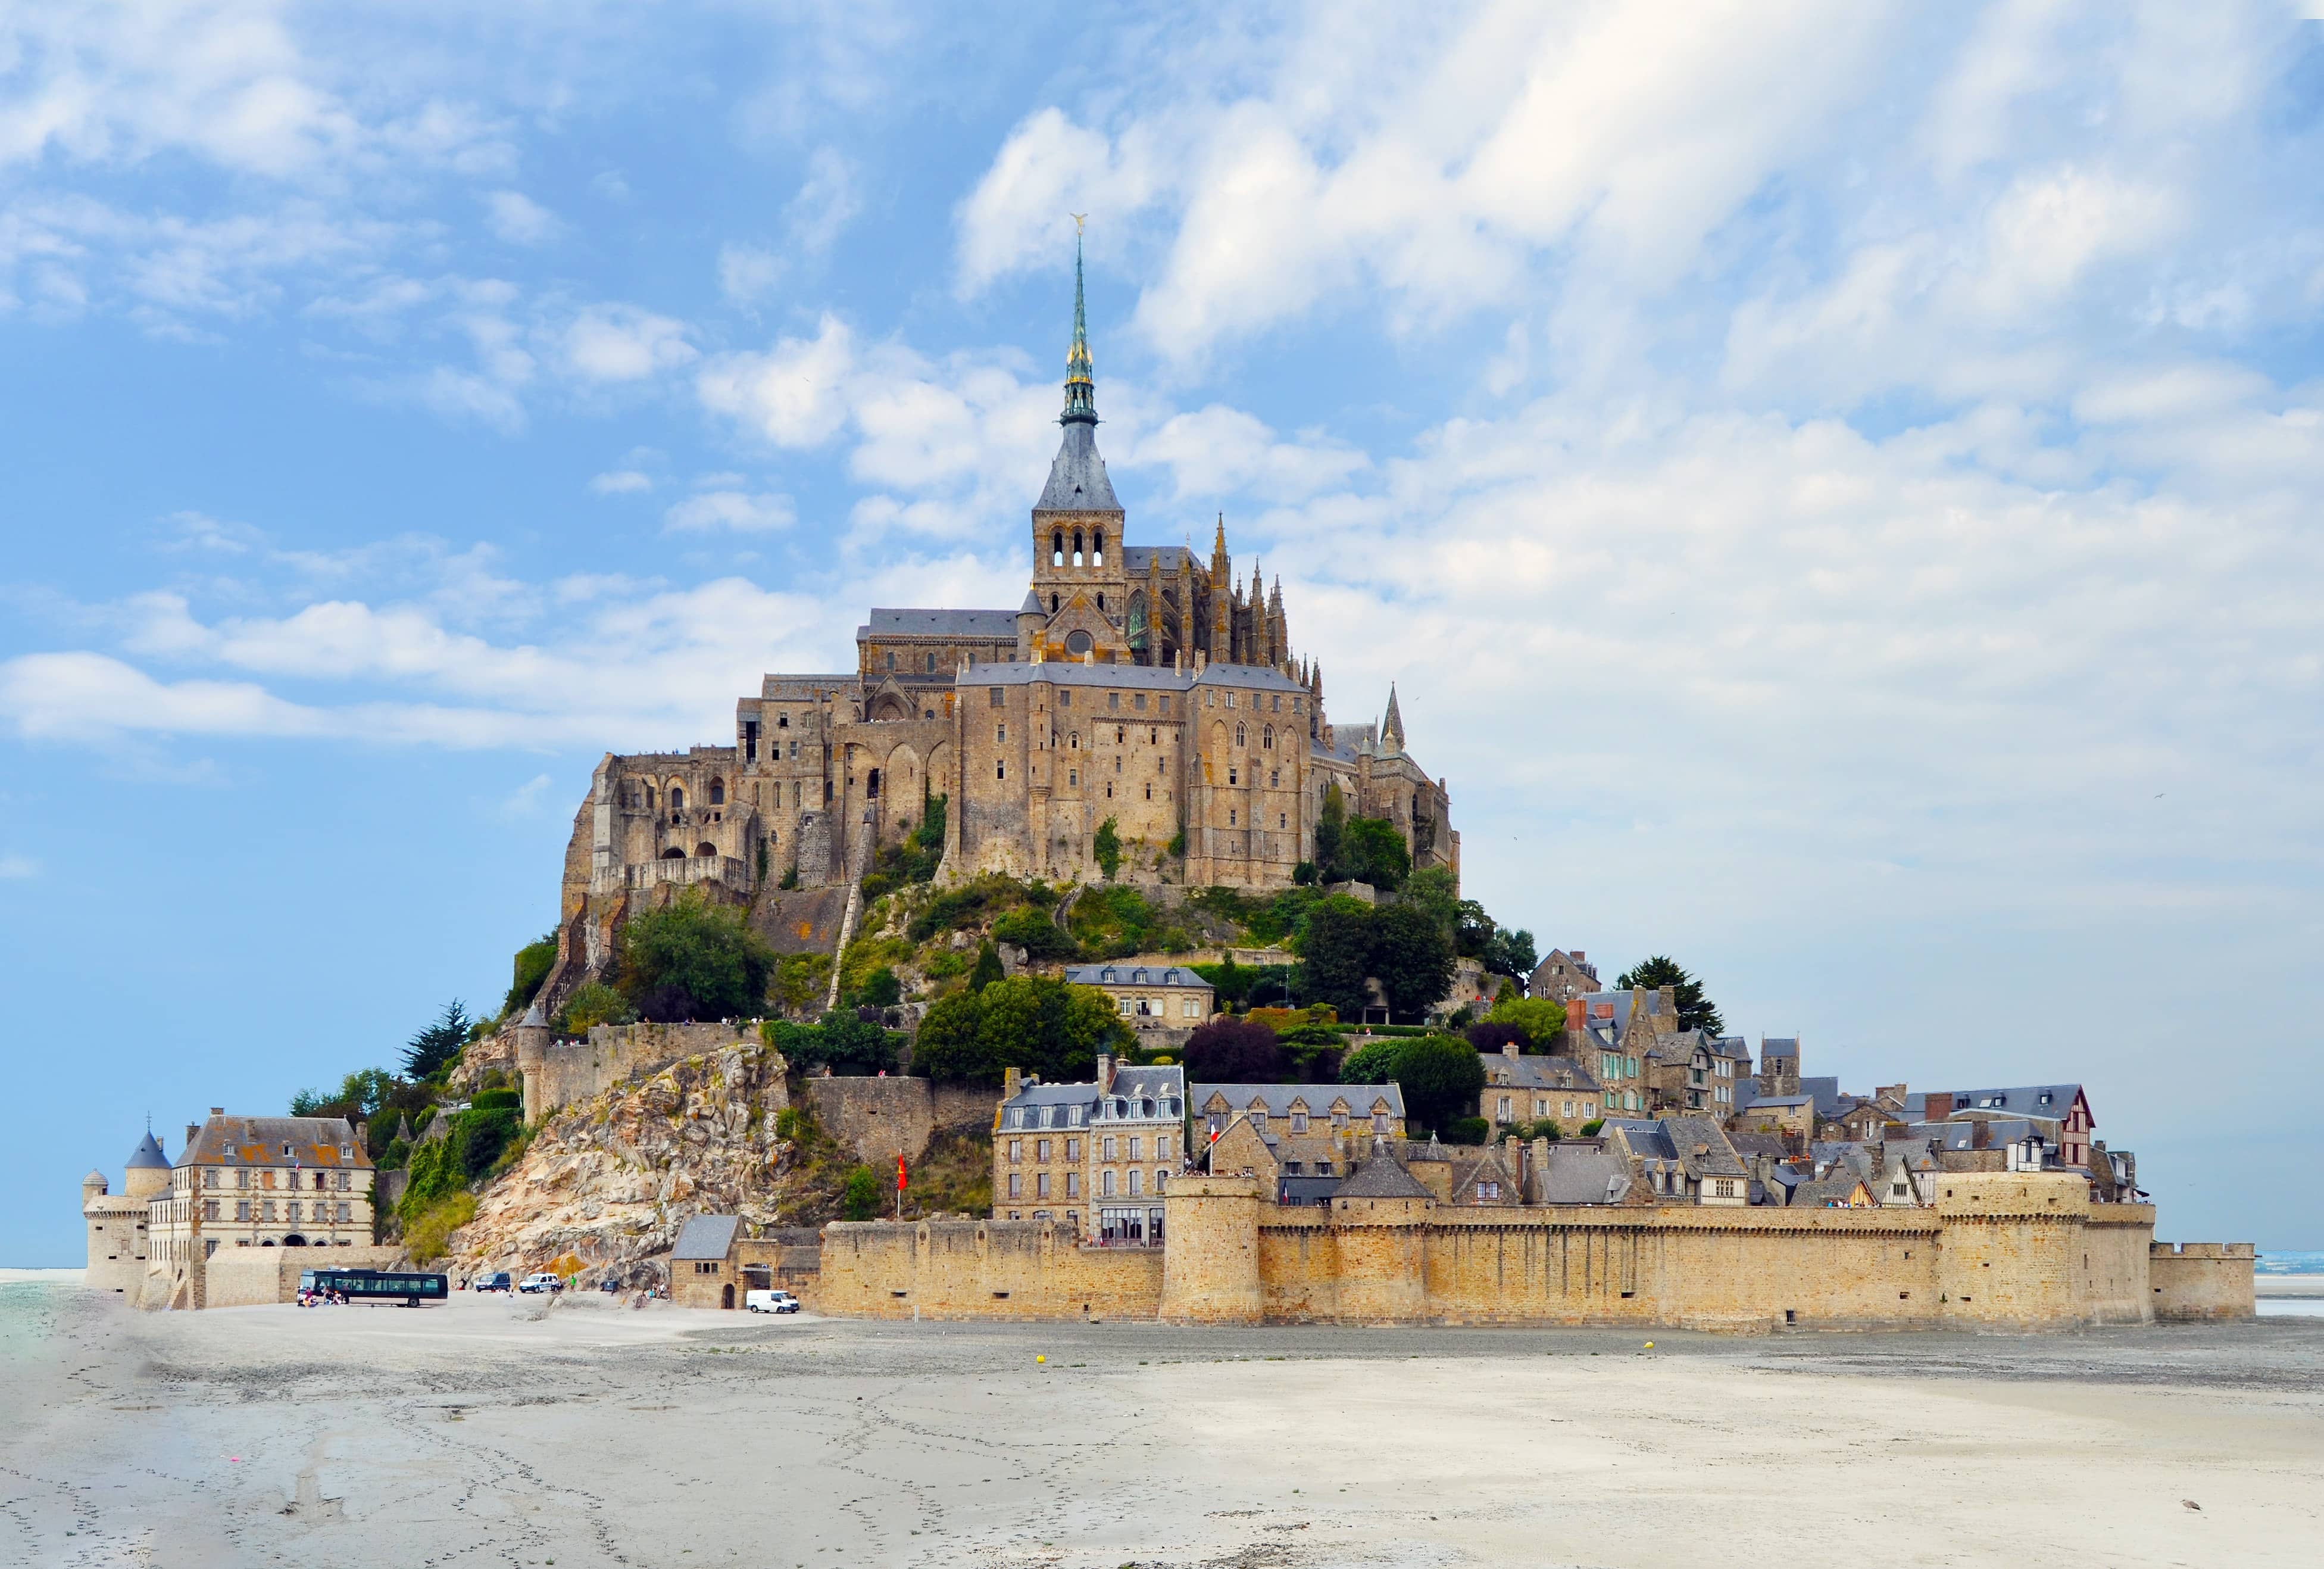 Vue du site du patrimoine mondial de l'UNESCO et de son architecture gothique, Le Mont Saint-Michel, à la frontière Normandie-Bretagne.